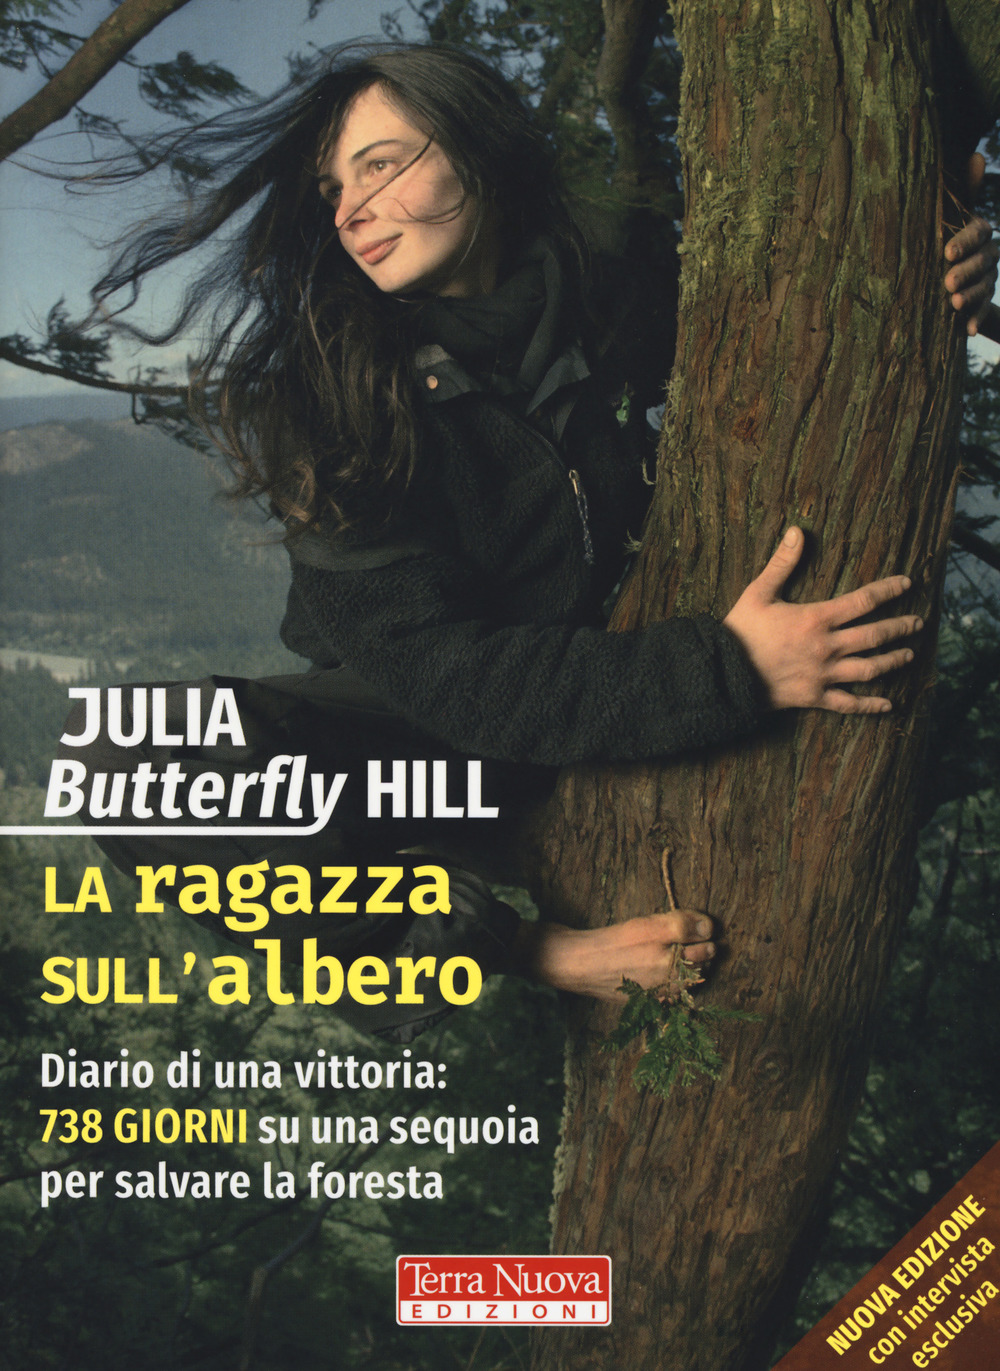 Libri Hill Julia Butterfly - La Ragazza Sull'albero. Diario Di Una Vittoria: 738 Giorni Su Una Sequoia Per Salvare La Foresta. Nuova Ediz. NUOVO SIGILLATO, EDIZIONE DEL 20/06/2018 SUBITO DISPONIBILE